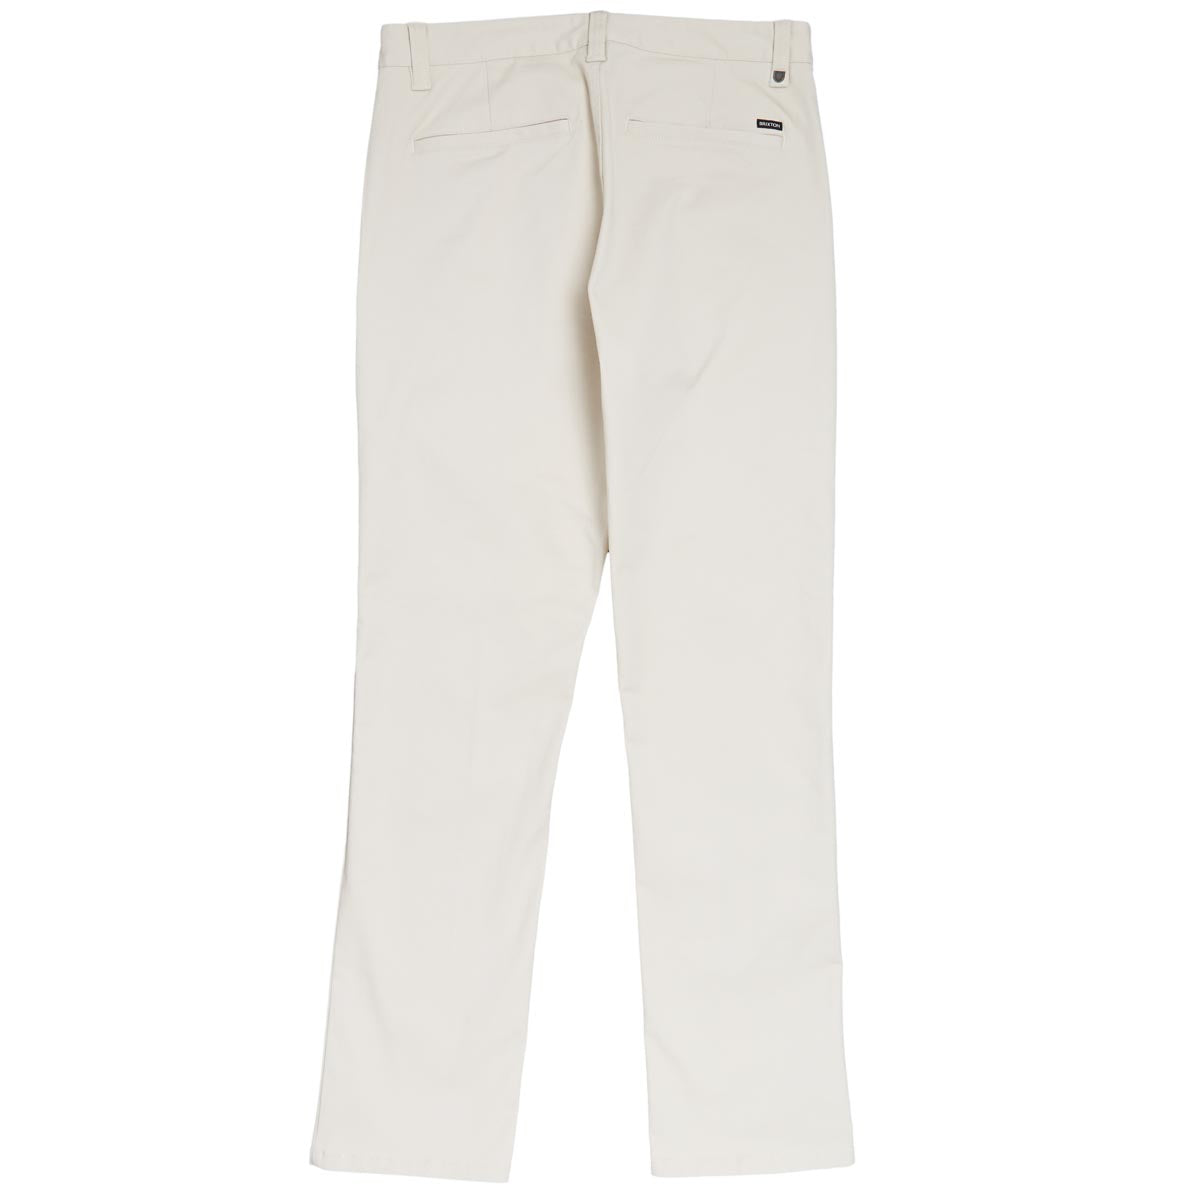 Brixton Choice Chino Regular Pants - Whitecap image 2